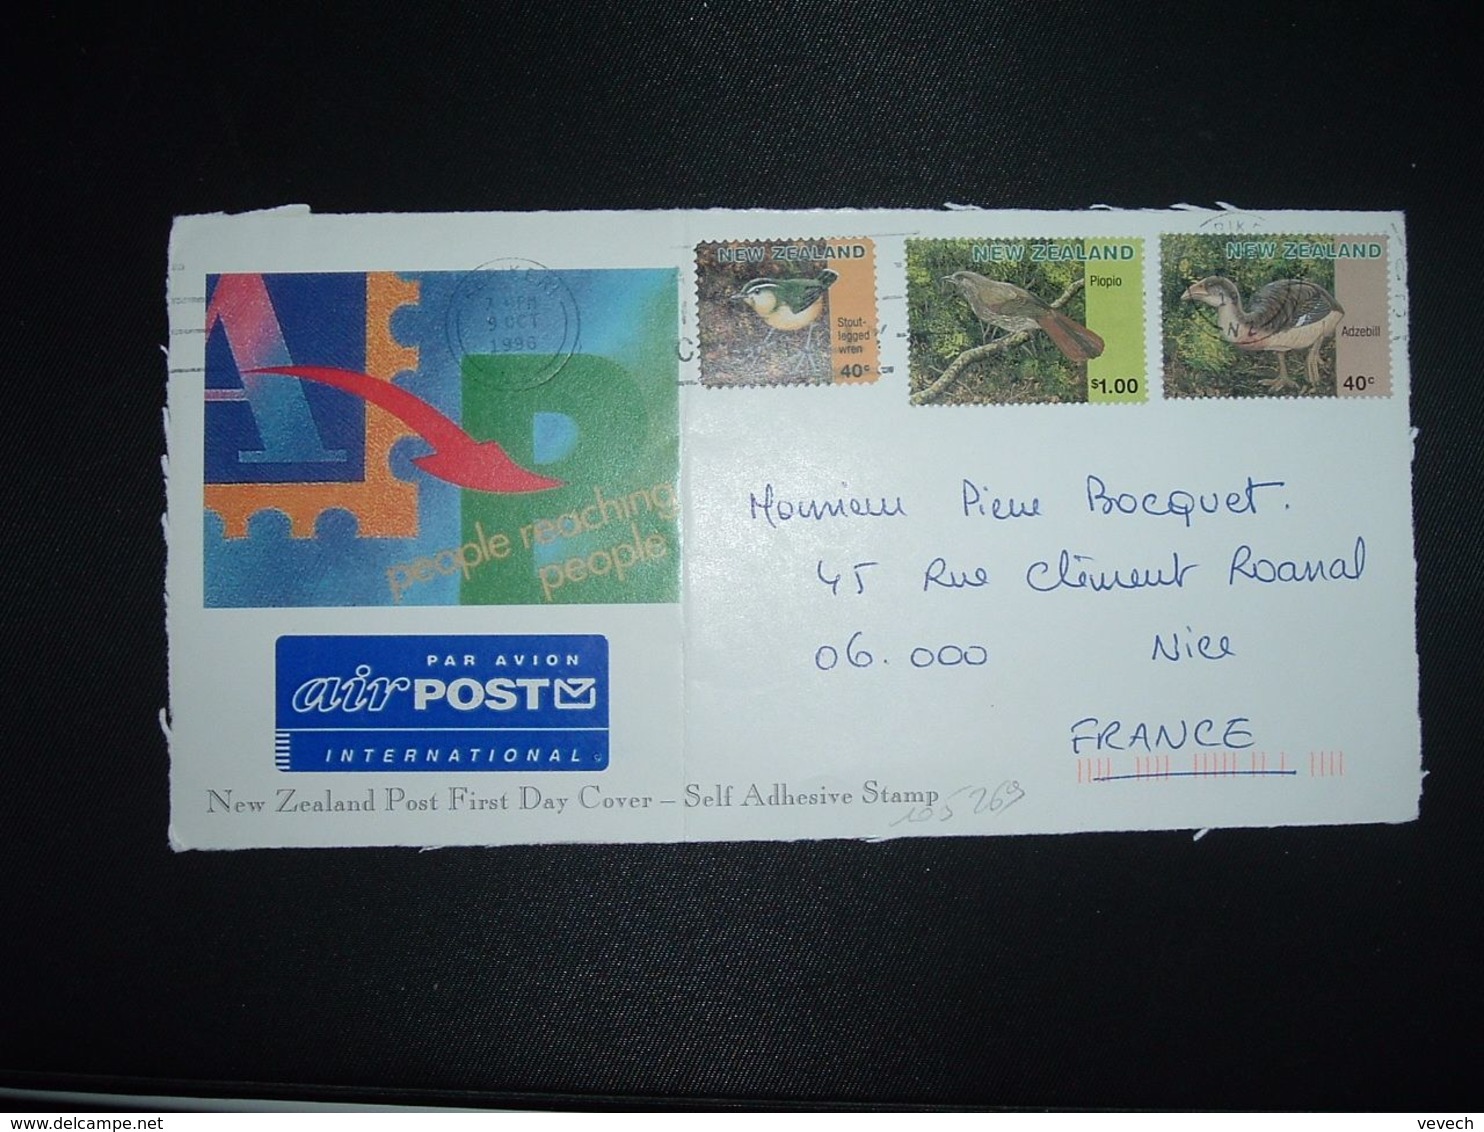 DEVANT Pour La FRANCE TP OISEAU ADZEBILL 40c + PIOPIO S 1.00 + STOUT-LEGGED VREN 40c OBL.MEC.9 OCT 1996 KERIXERN - Covers & Documents